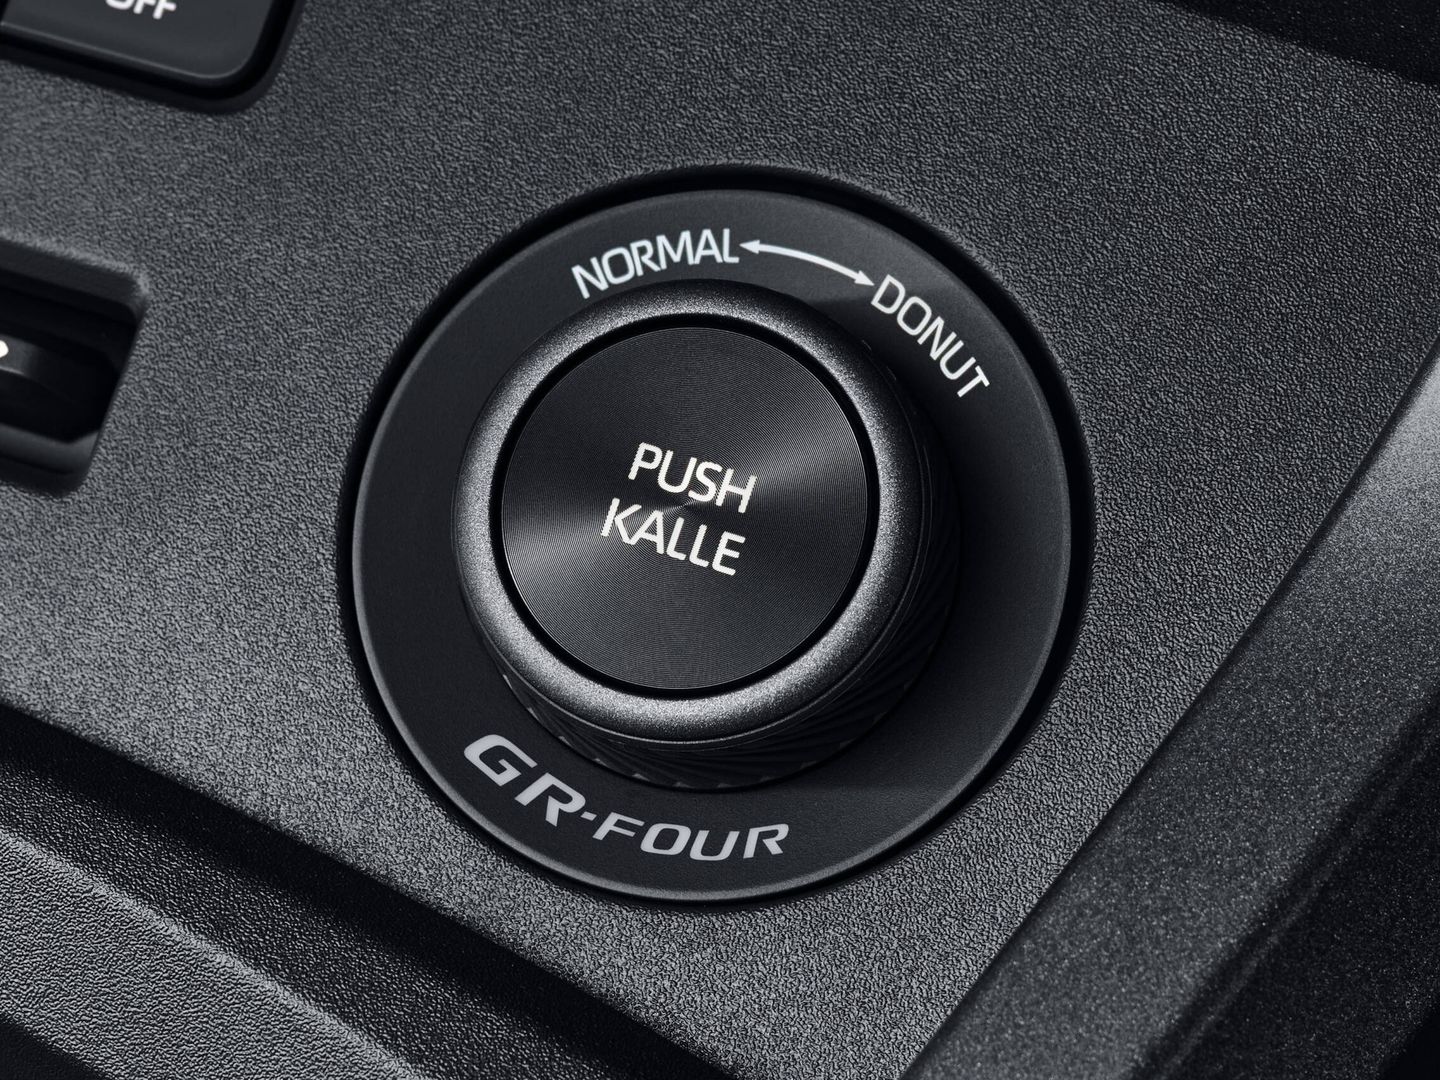 En este selector se puede elegir entre los modos de conducción Normal, Kalle y Donut.